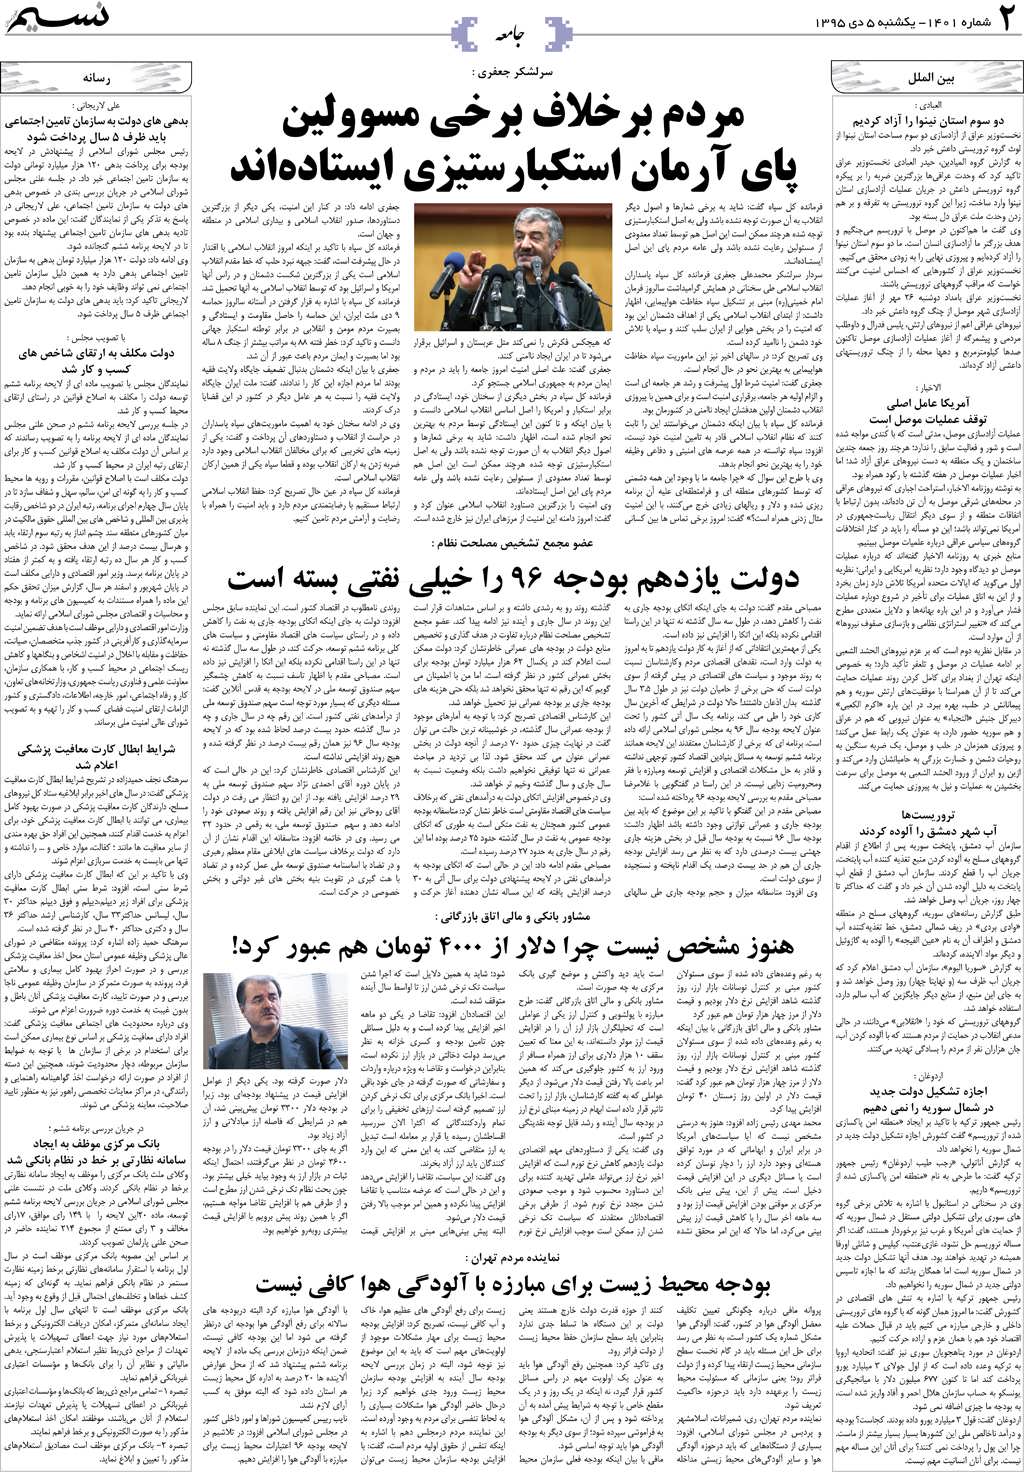 صفحه جامعه روزنامه نسیم شماره 1401